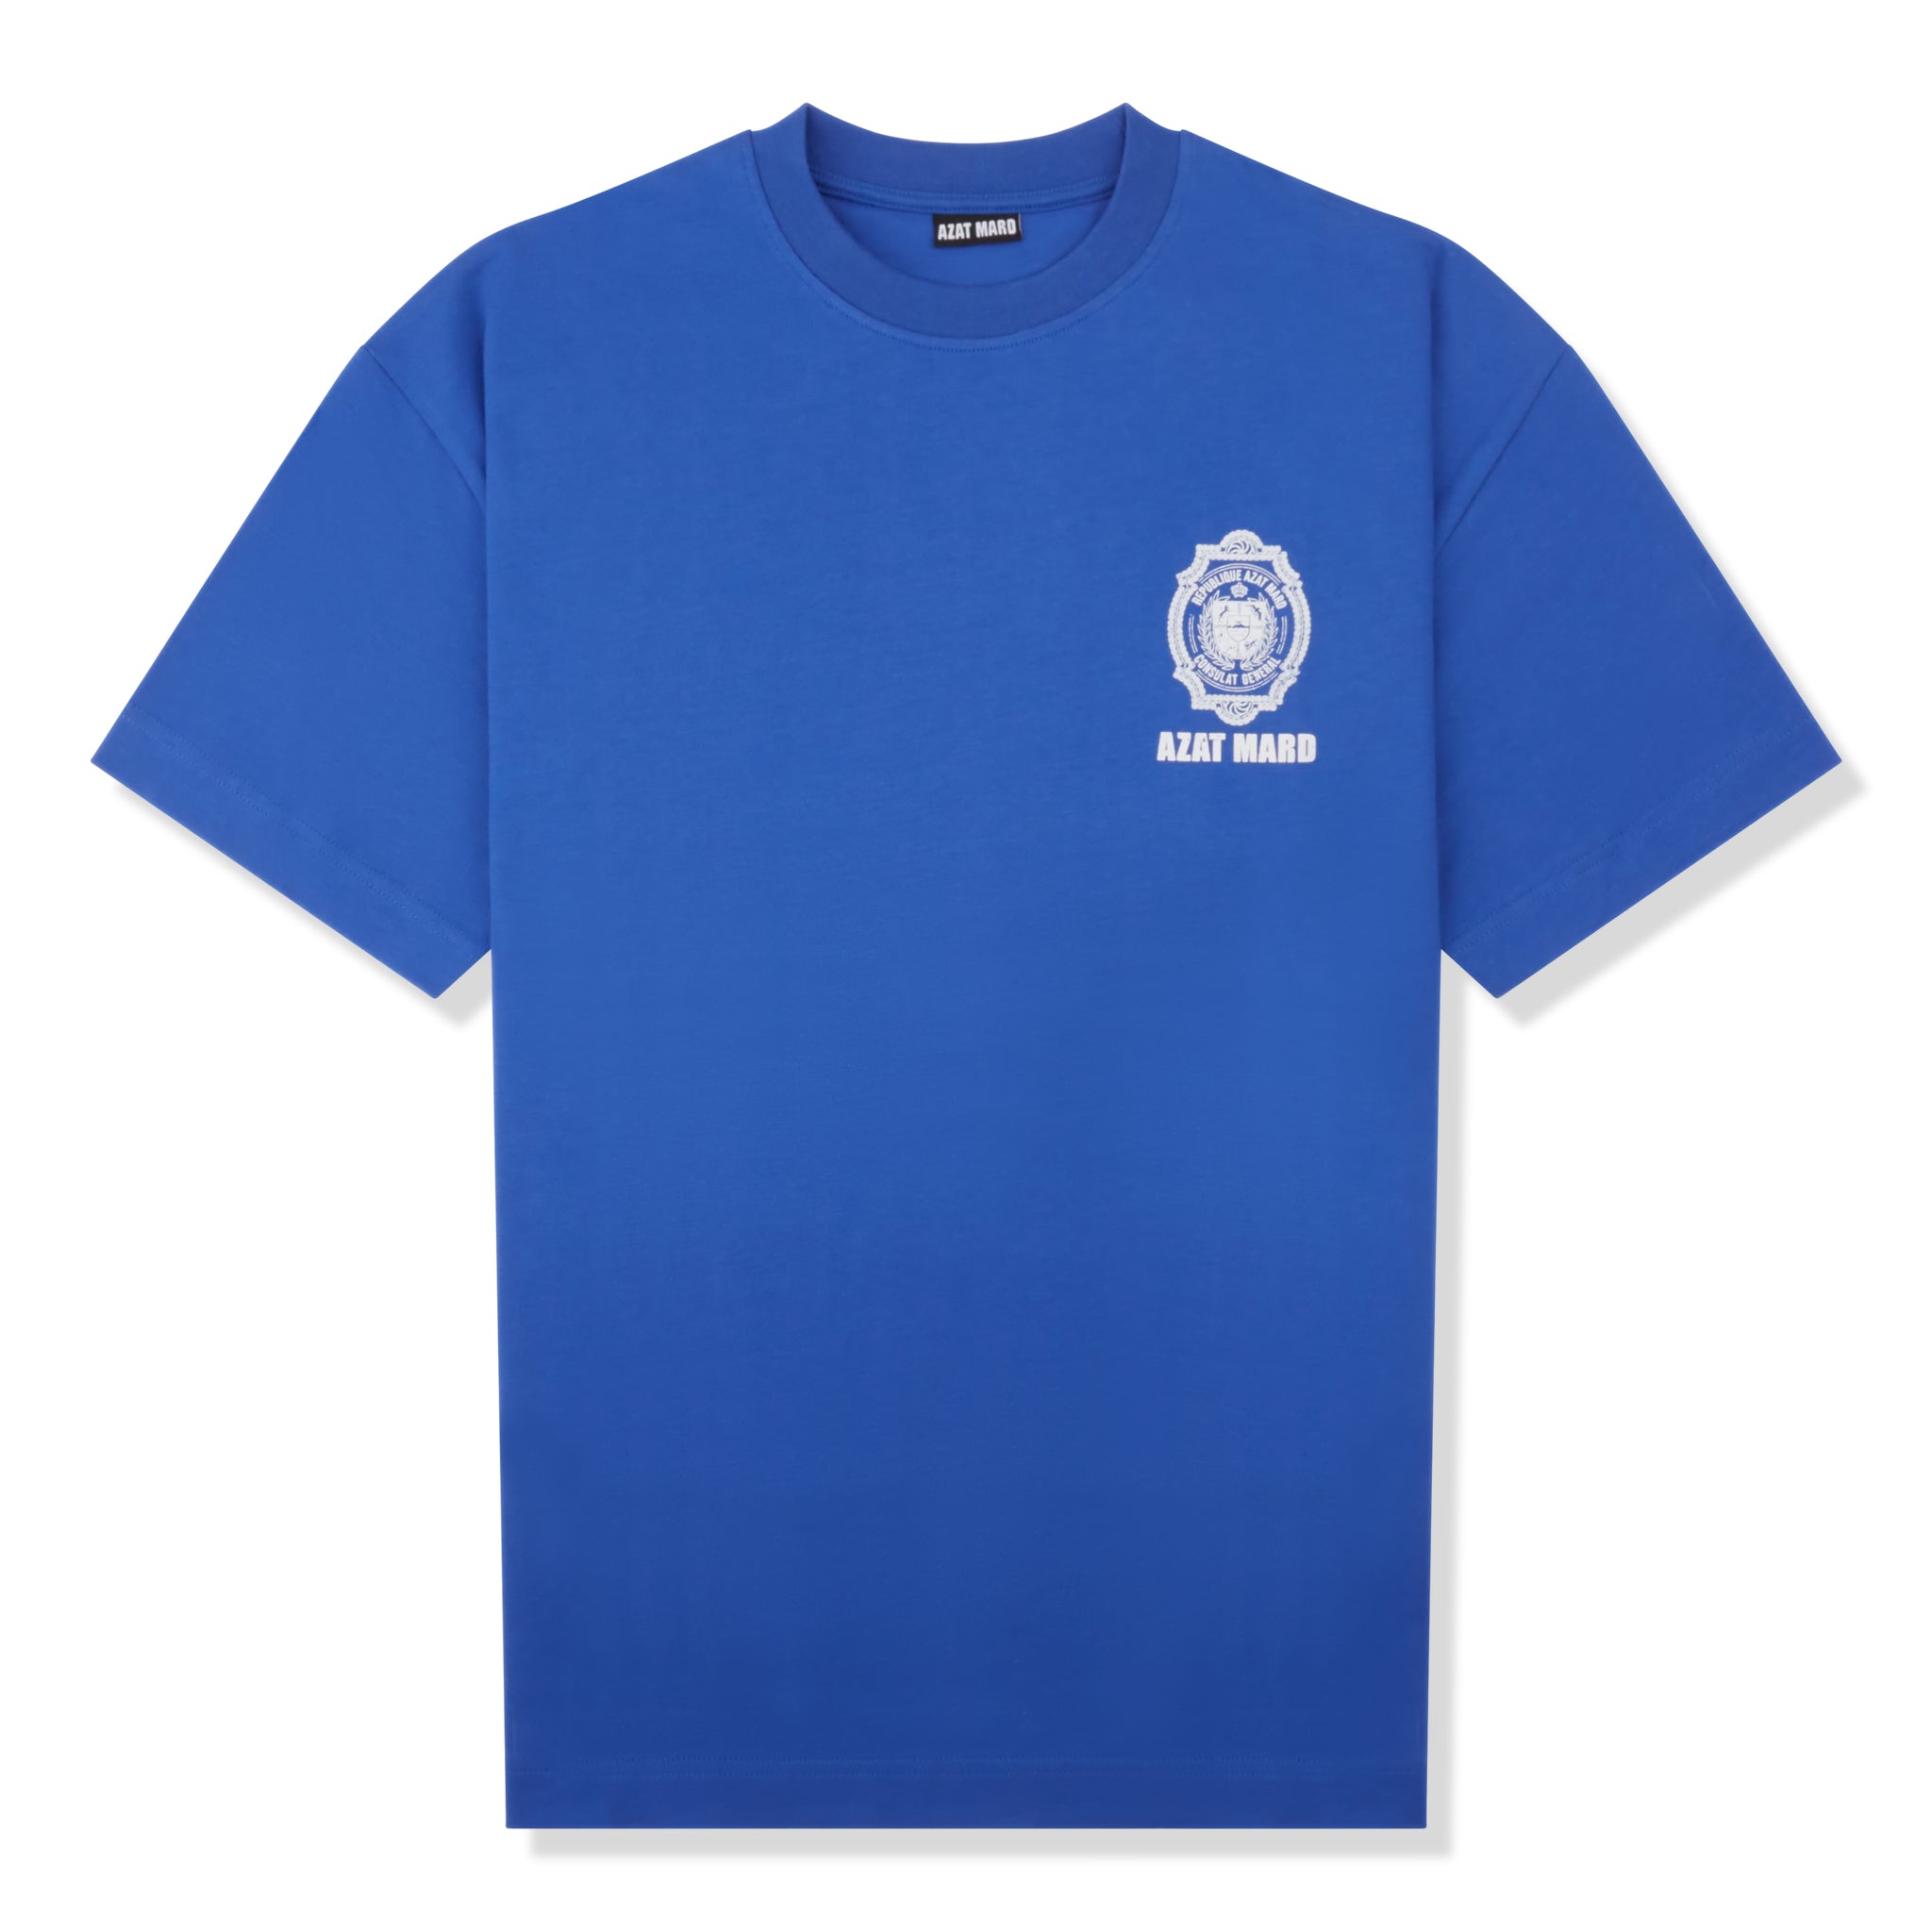 Azat Mard Crest T Shirt Blue SS23043